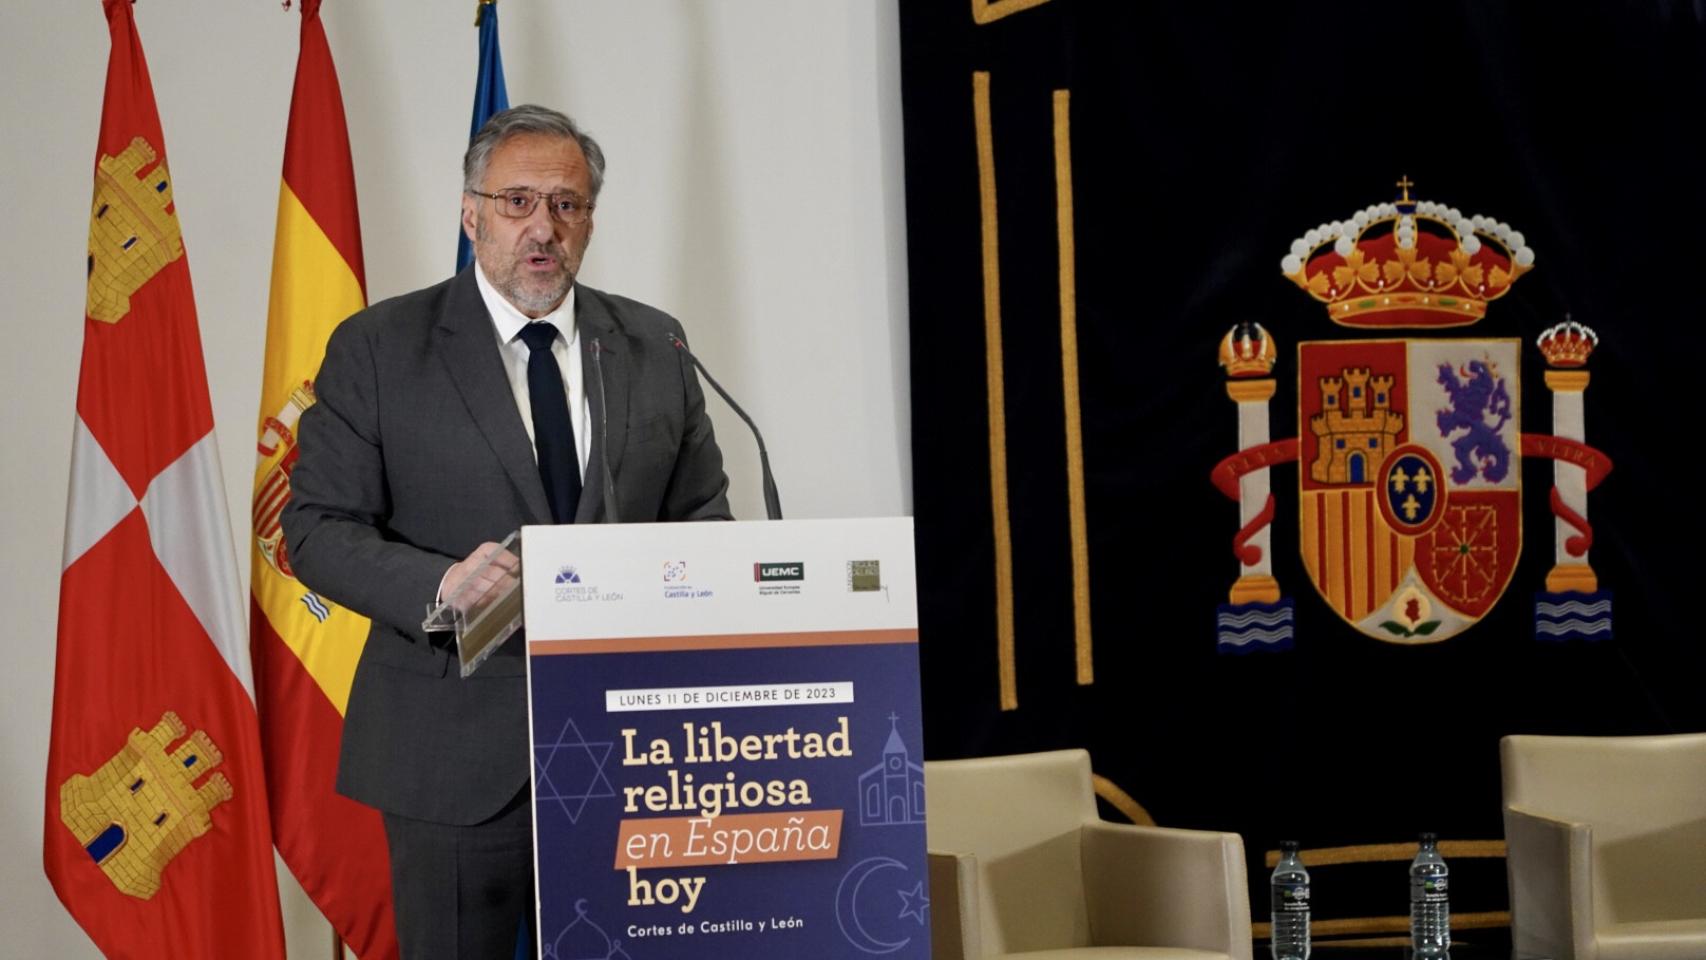 El presidente de las Cortes, Carlos Pollán, durante la inauguración de la jornada 'La libertad religiosa en España hoy' en las Cortes, este lunes.